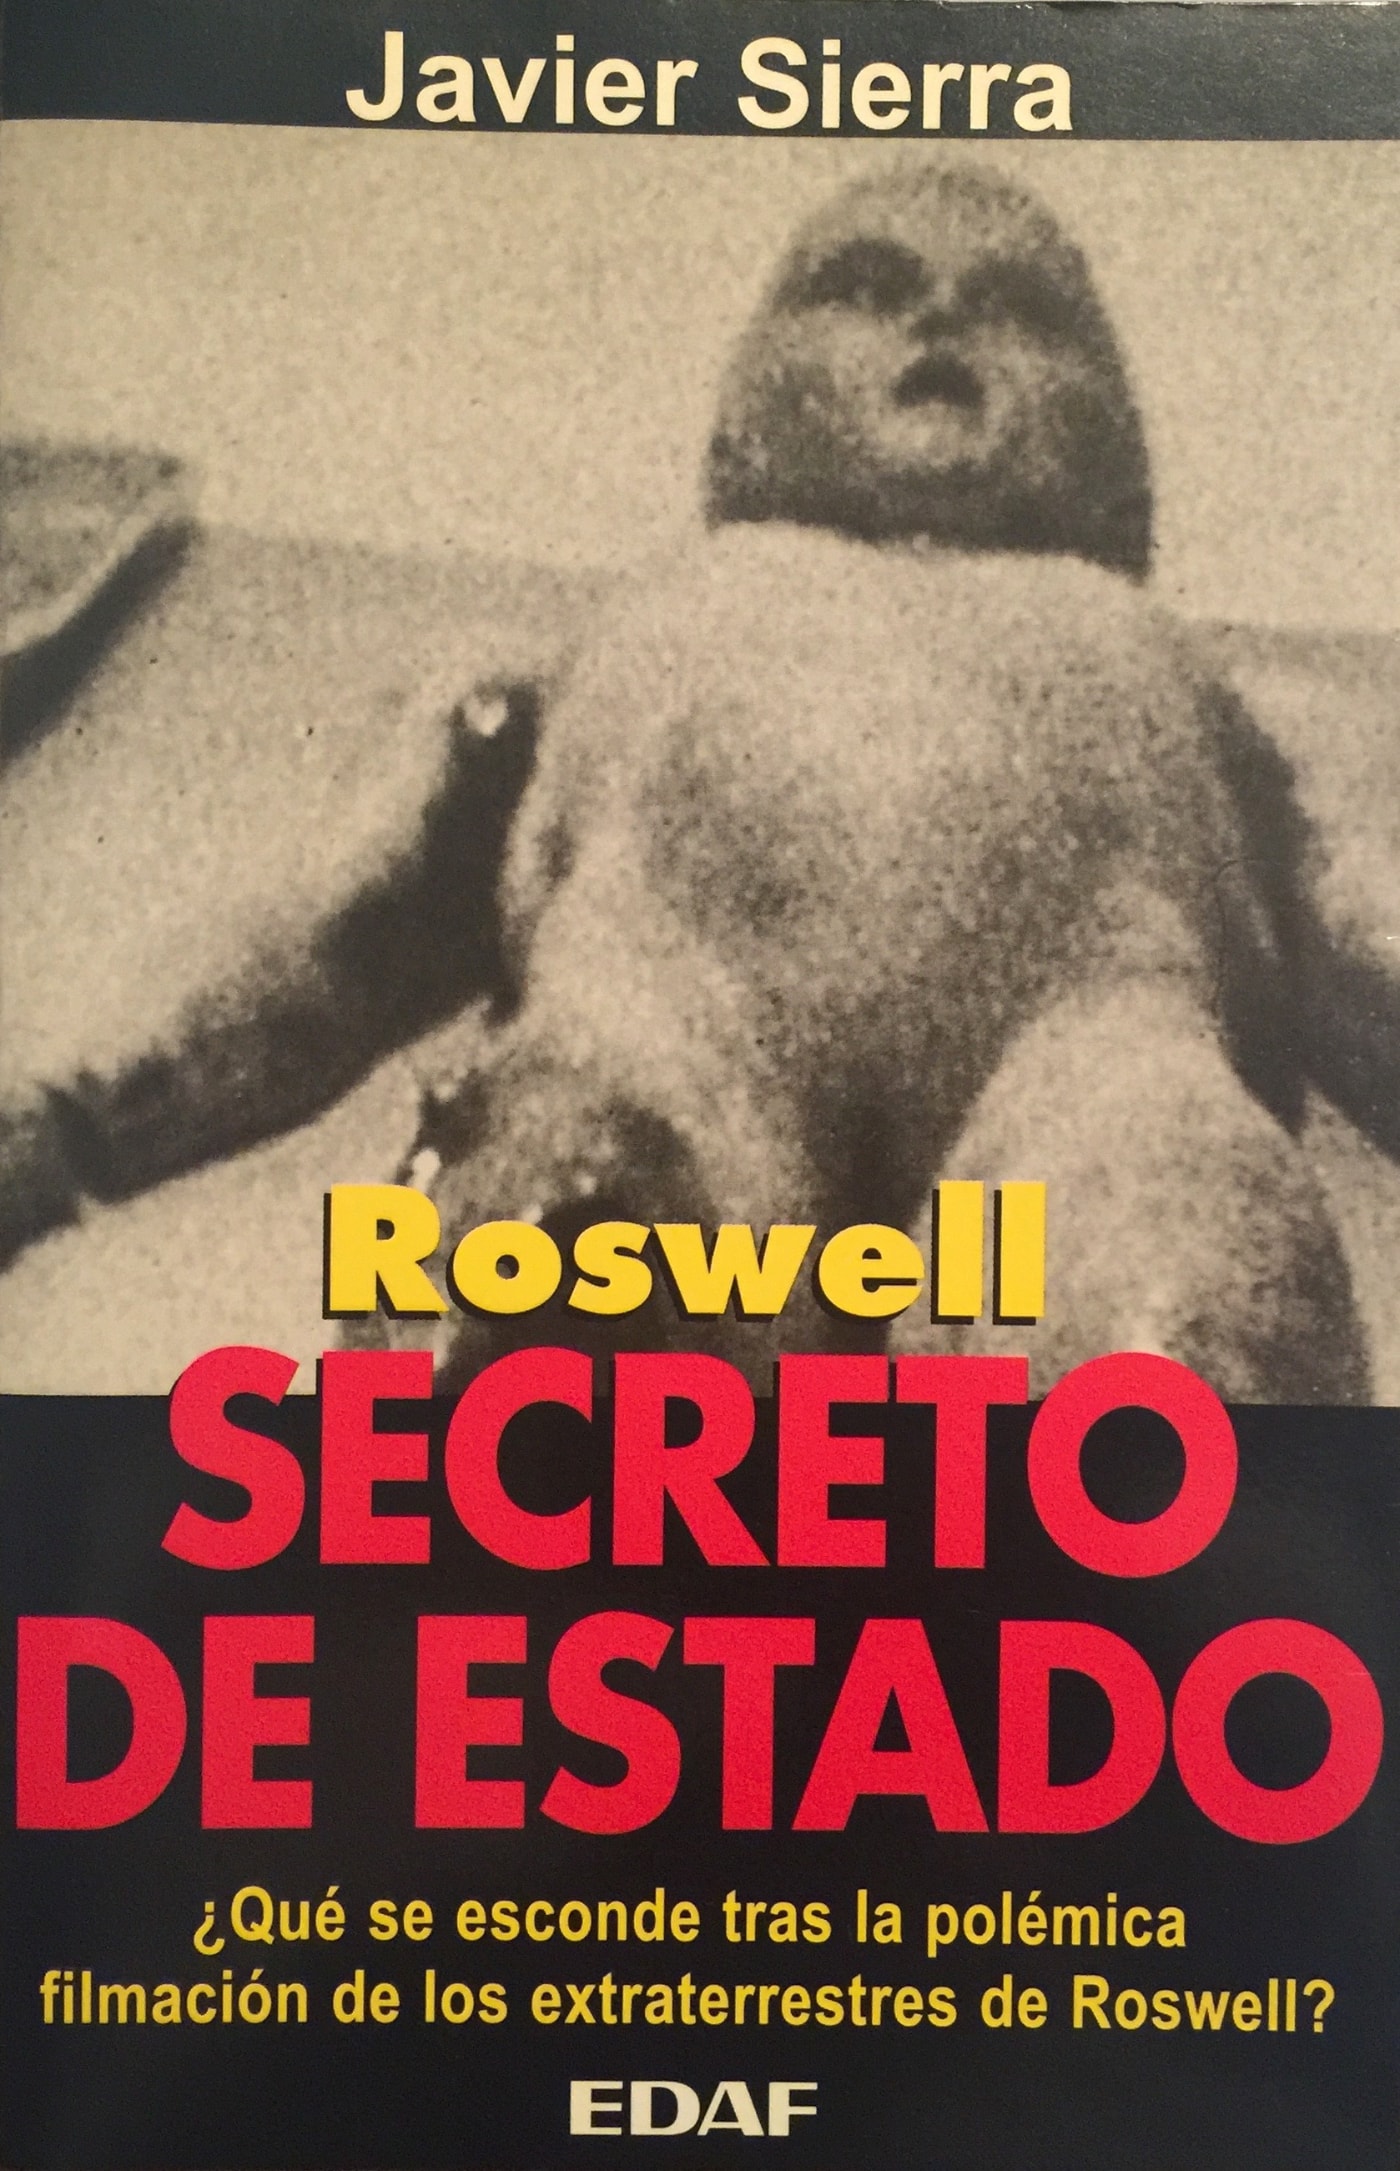 Javier Sierra, hoy novelista, escribió en 1995 un libro defendiendo la veracidad del caso de Roswell.